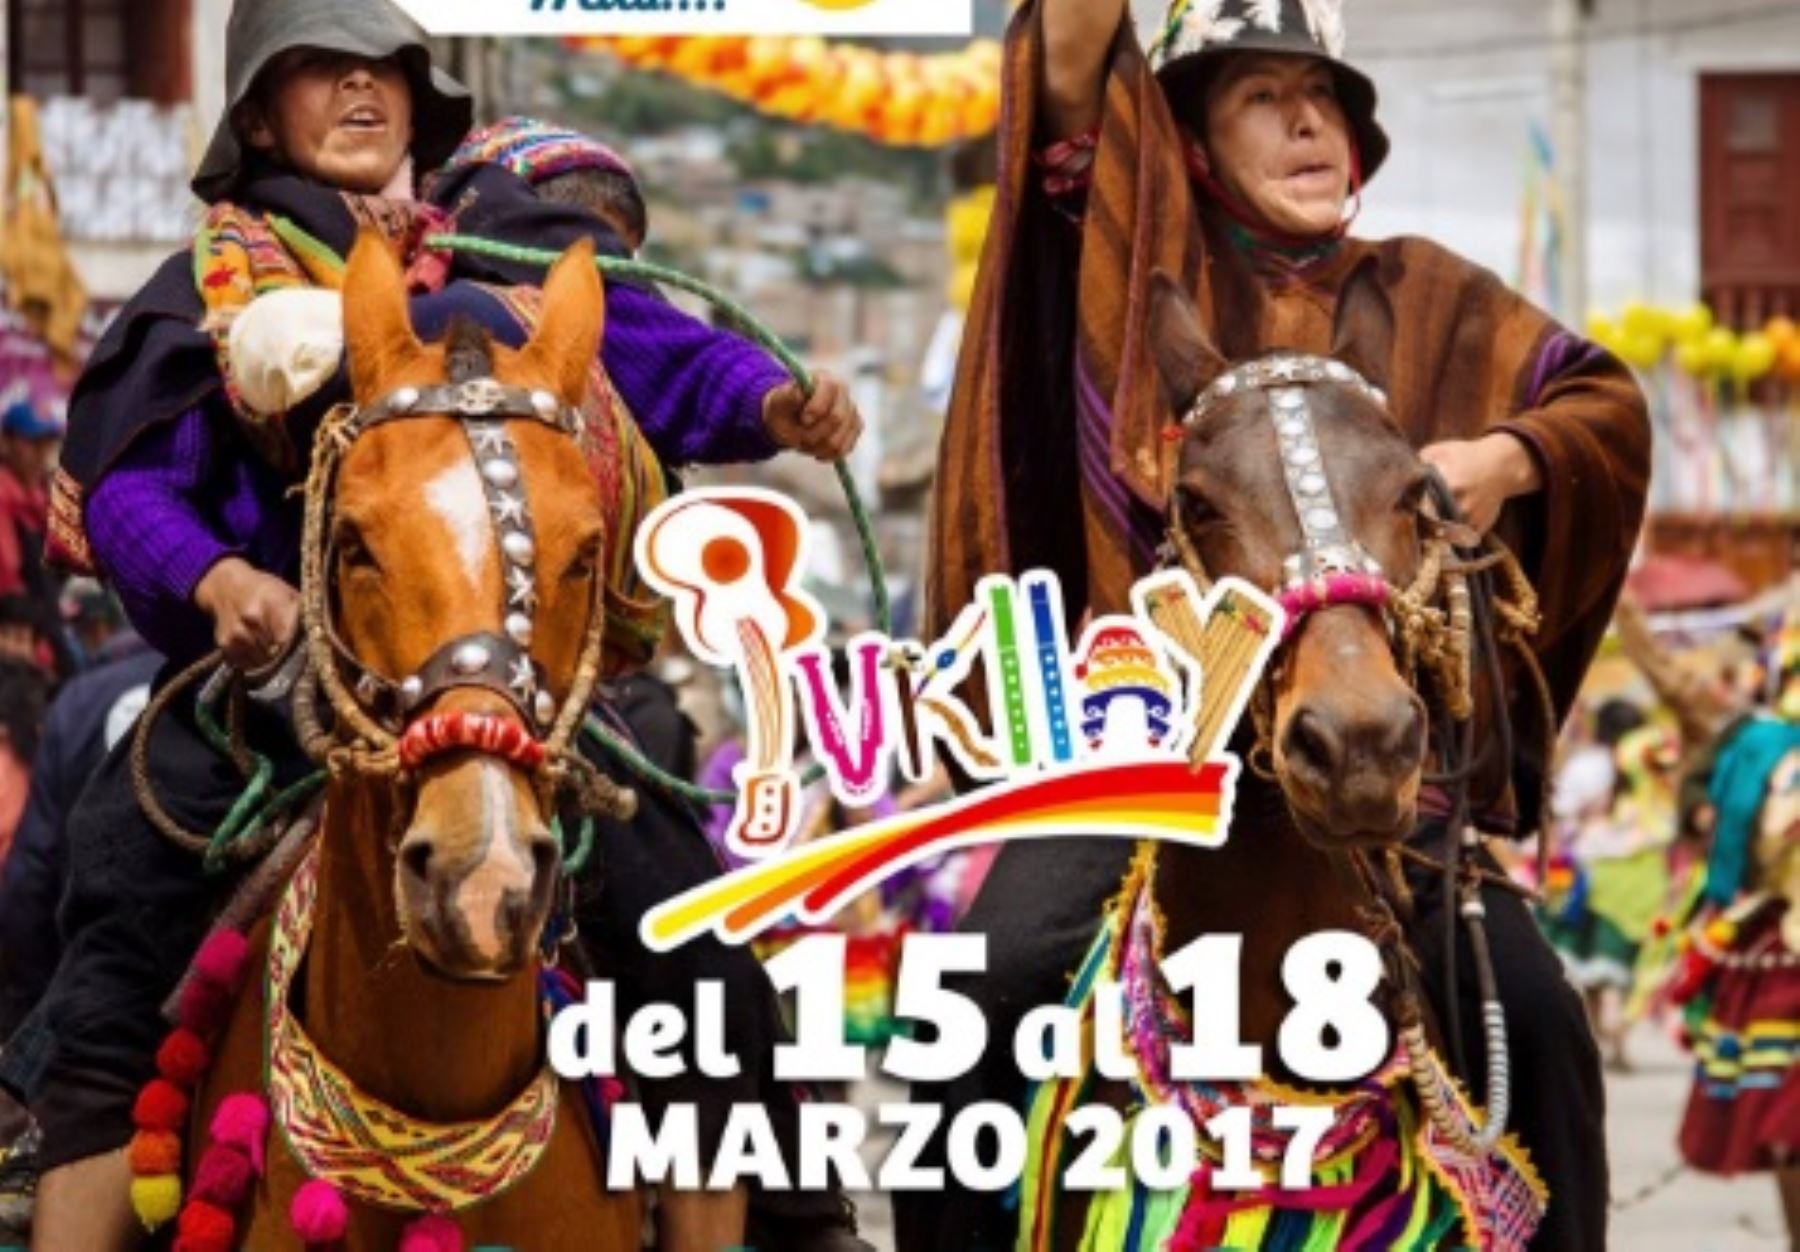 La ciudad de Andahuaylas espera a más de 20,000 turistas, entre nacionales y extranjeros, durante las celebraciones del colorido y alegre Carnaval de Pukllay 2017, a realizarse del 15 al 18 de marzo.